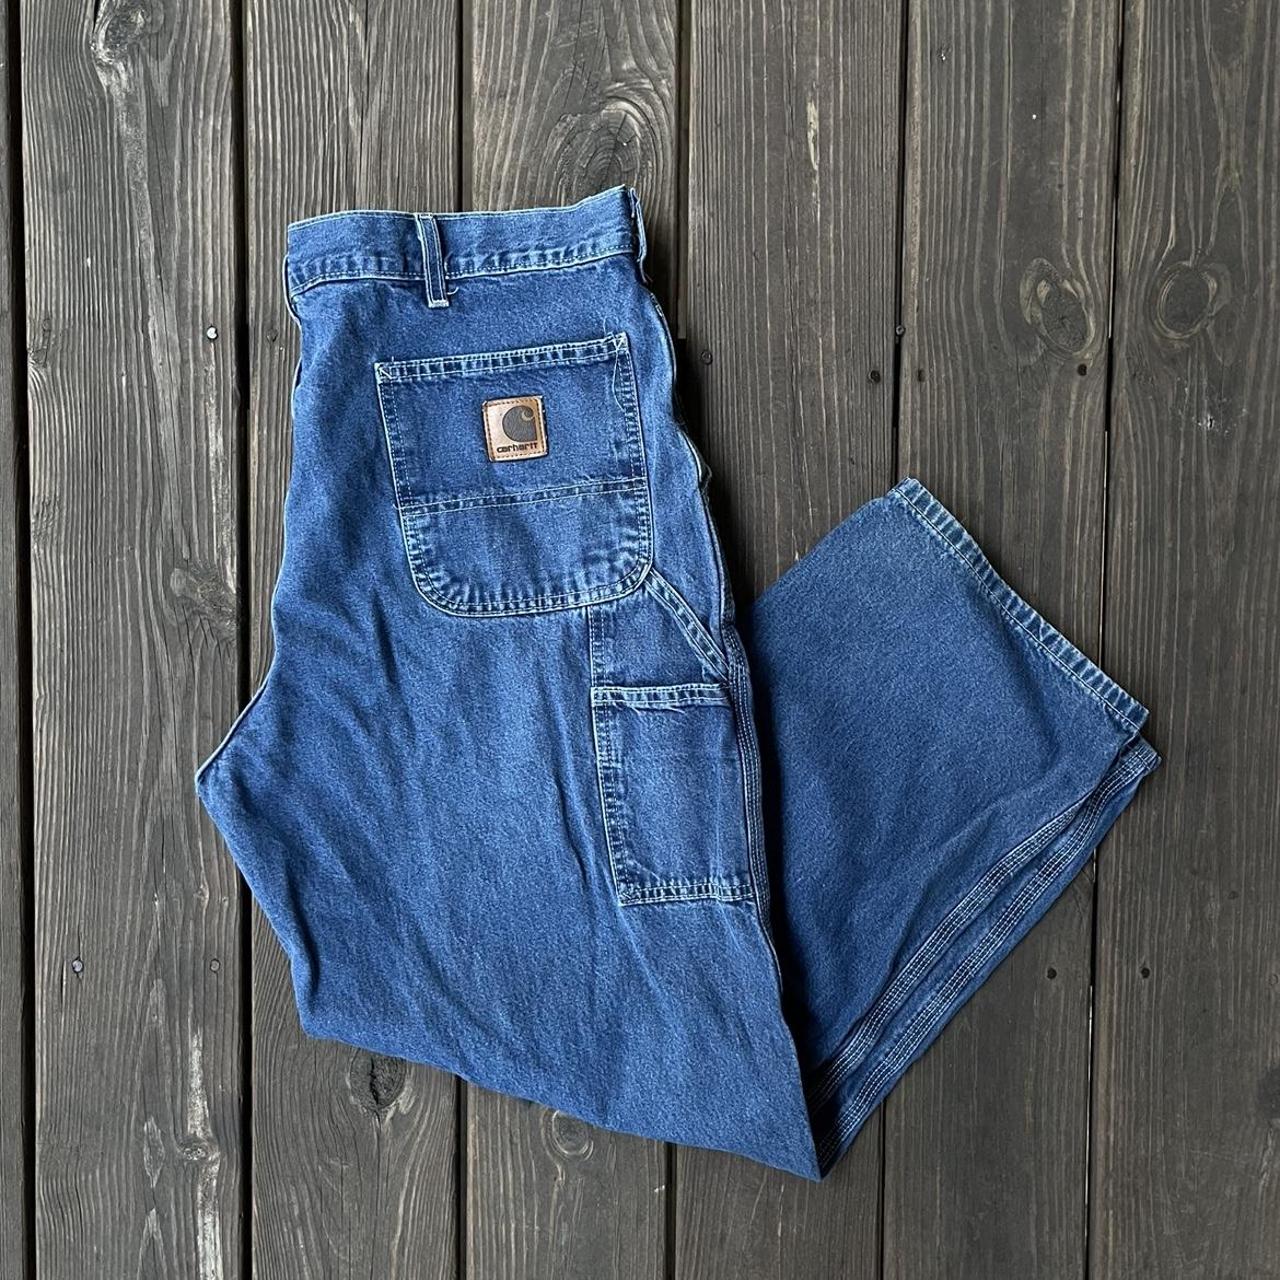 Vintage Carhartt Carpenter Jeans Big Patch -... - Depop